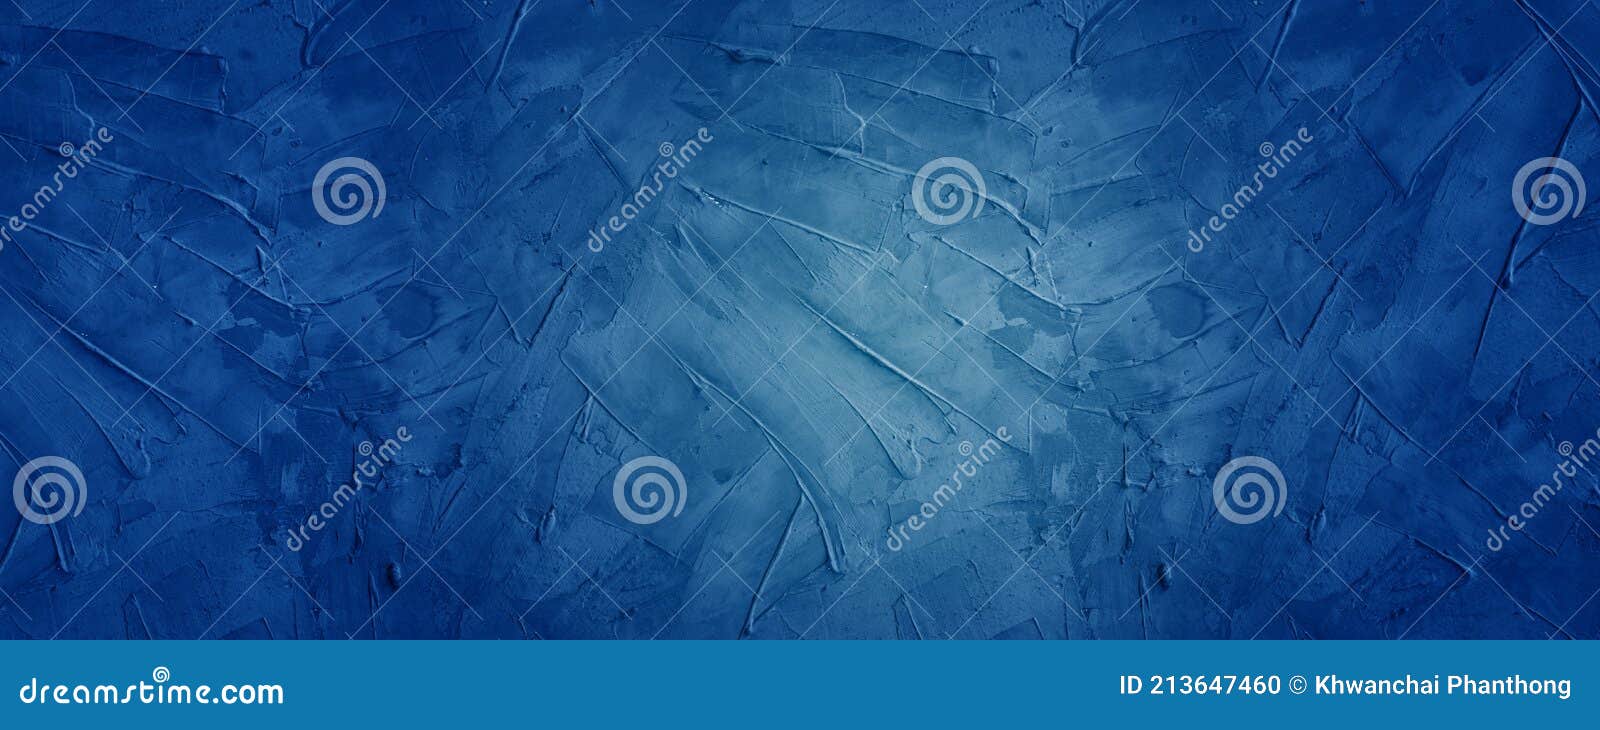 Fond de bannière horizontale en ciment foncé et bleu